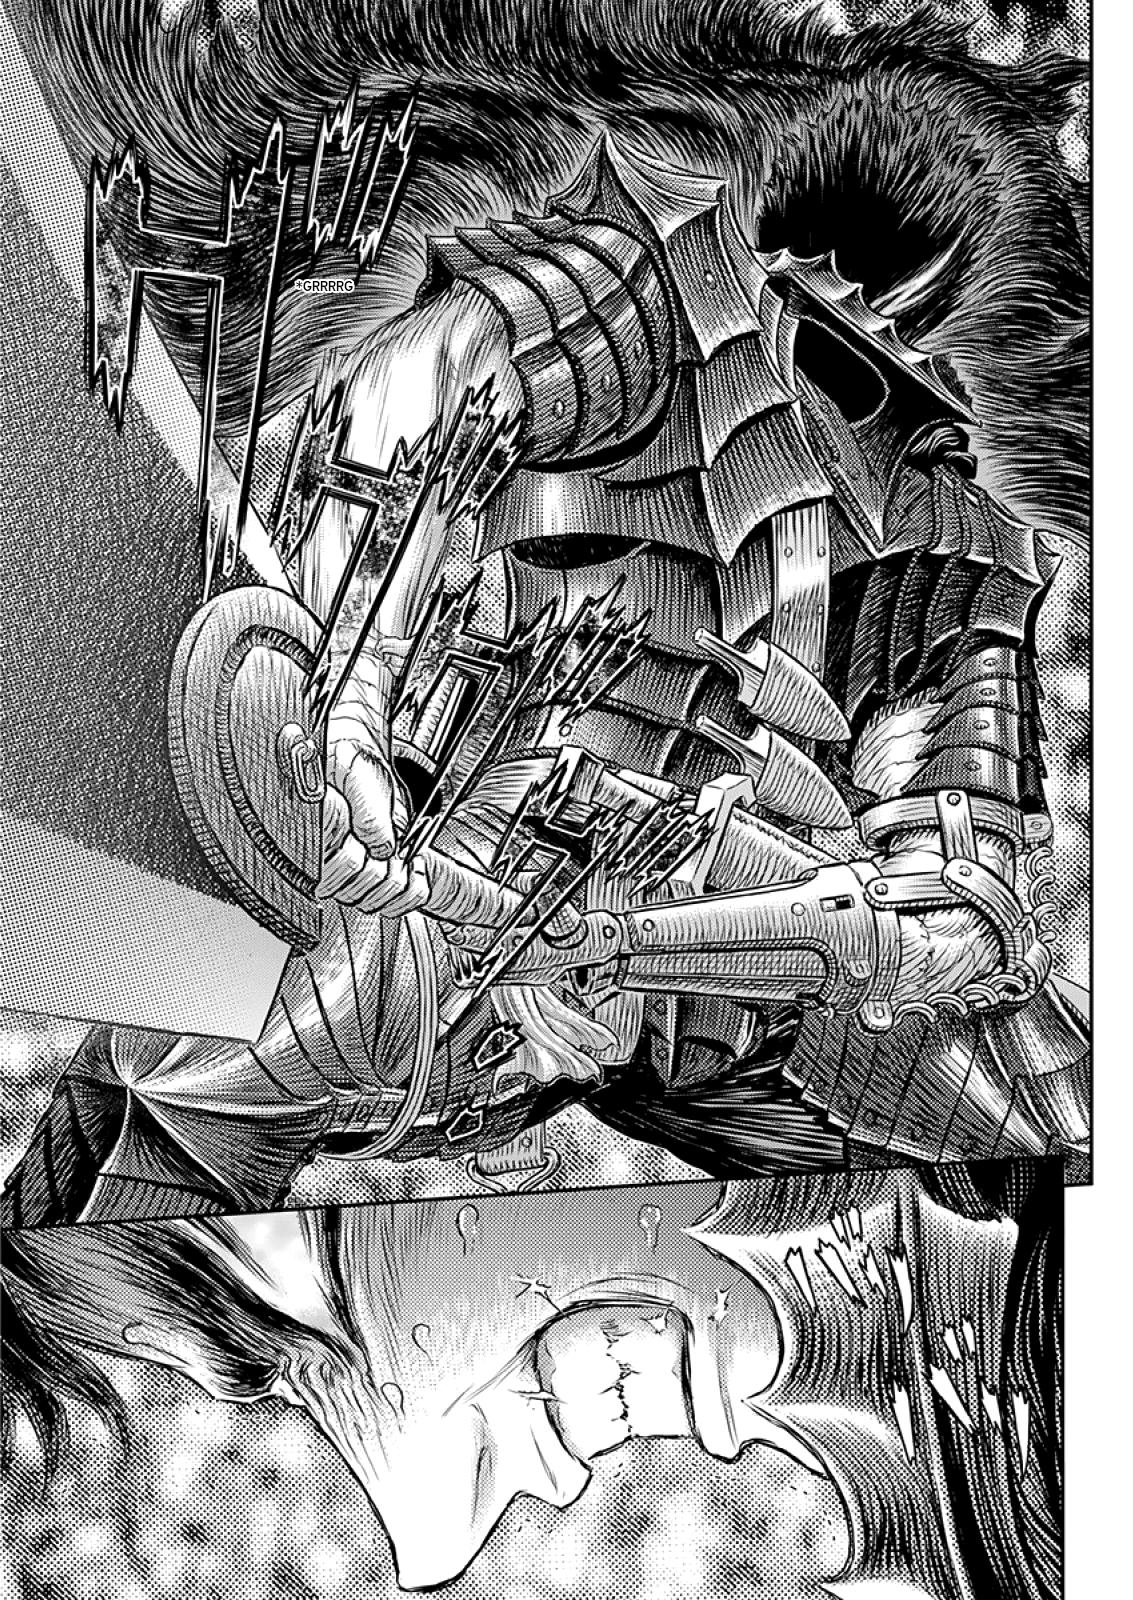 Berserk Manga Chapter 373 image 13